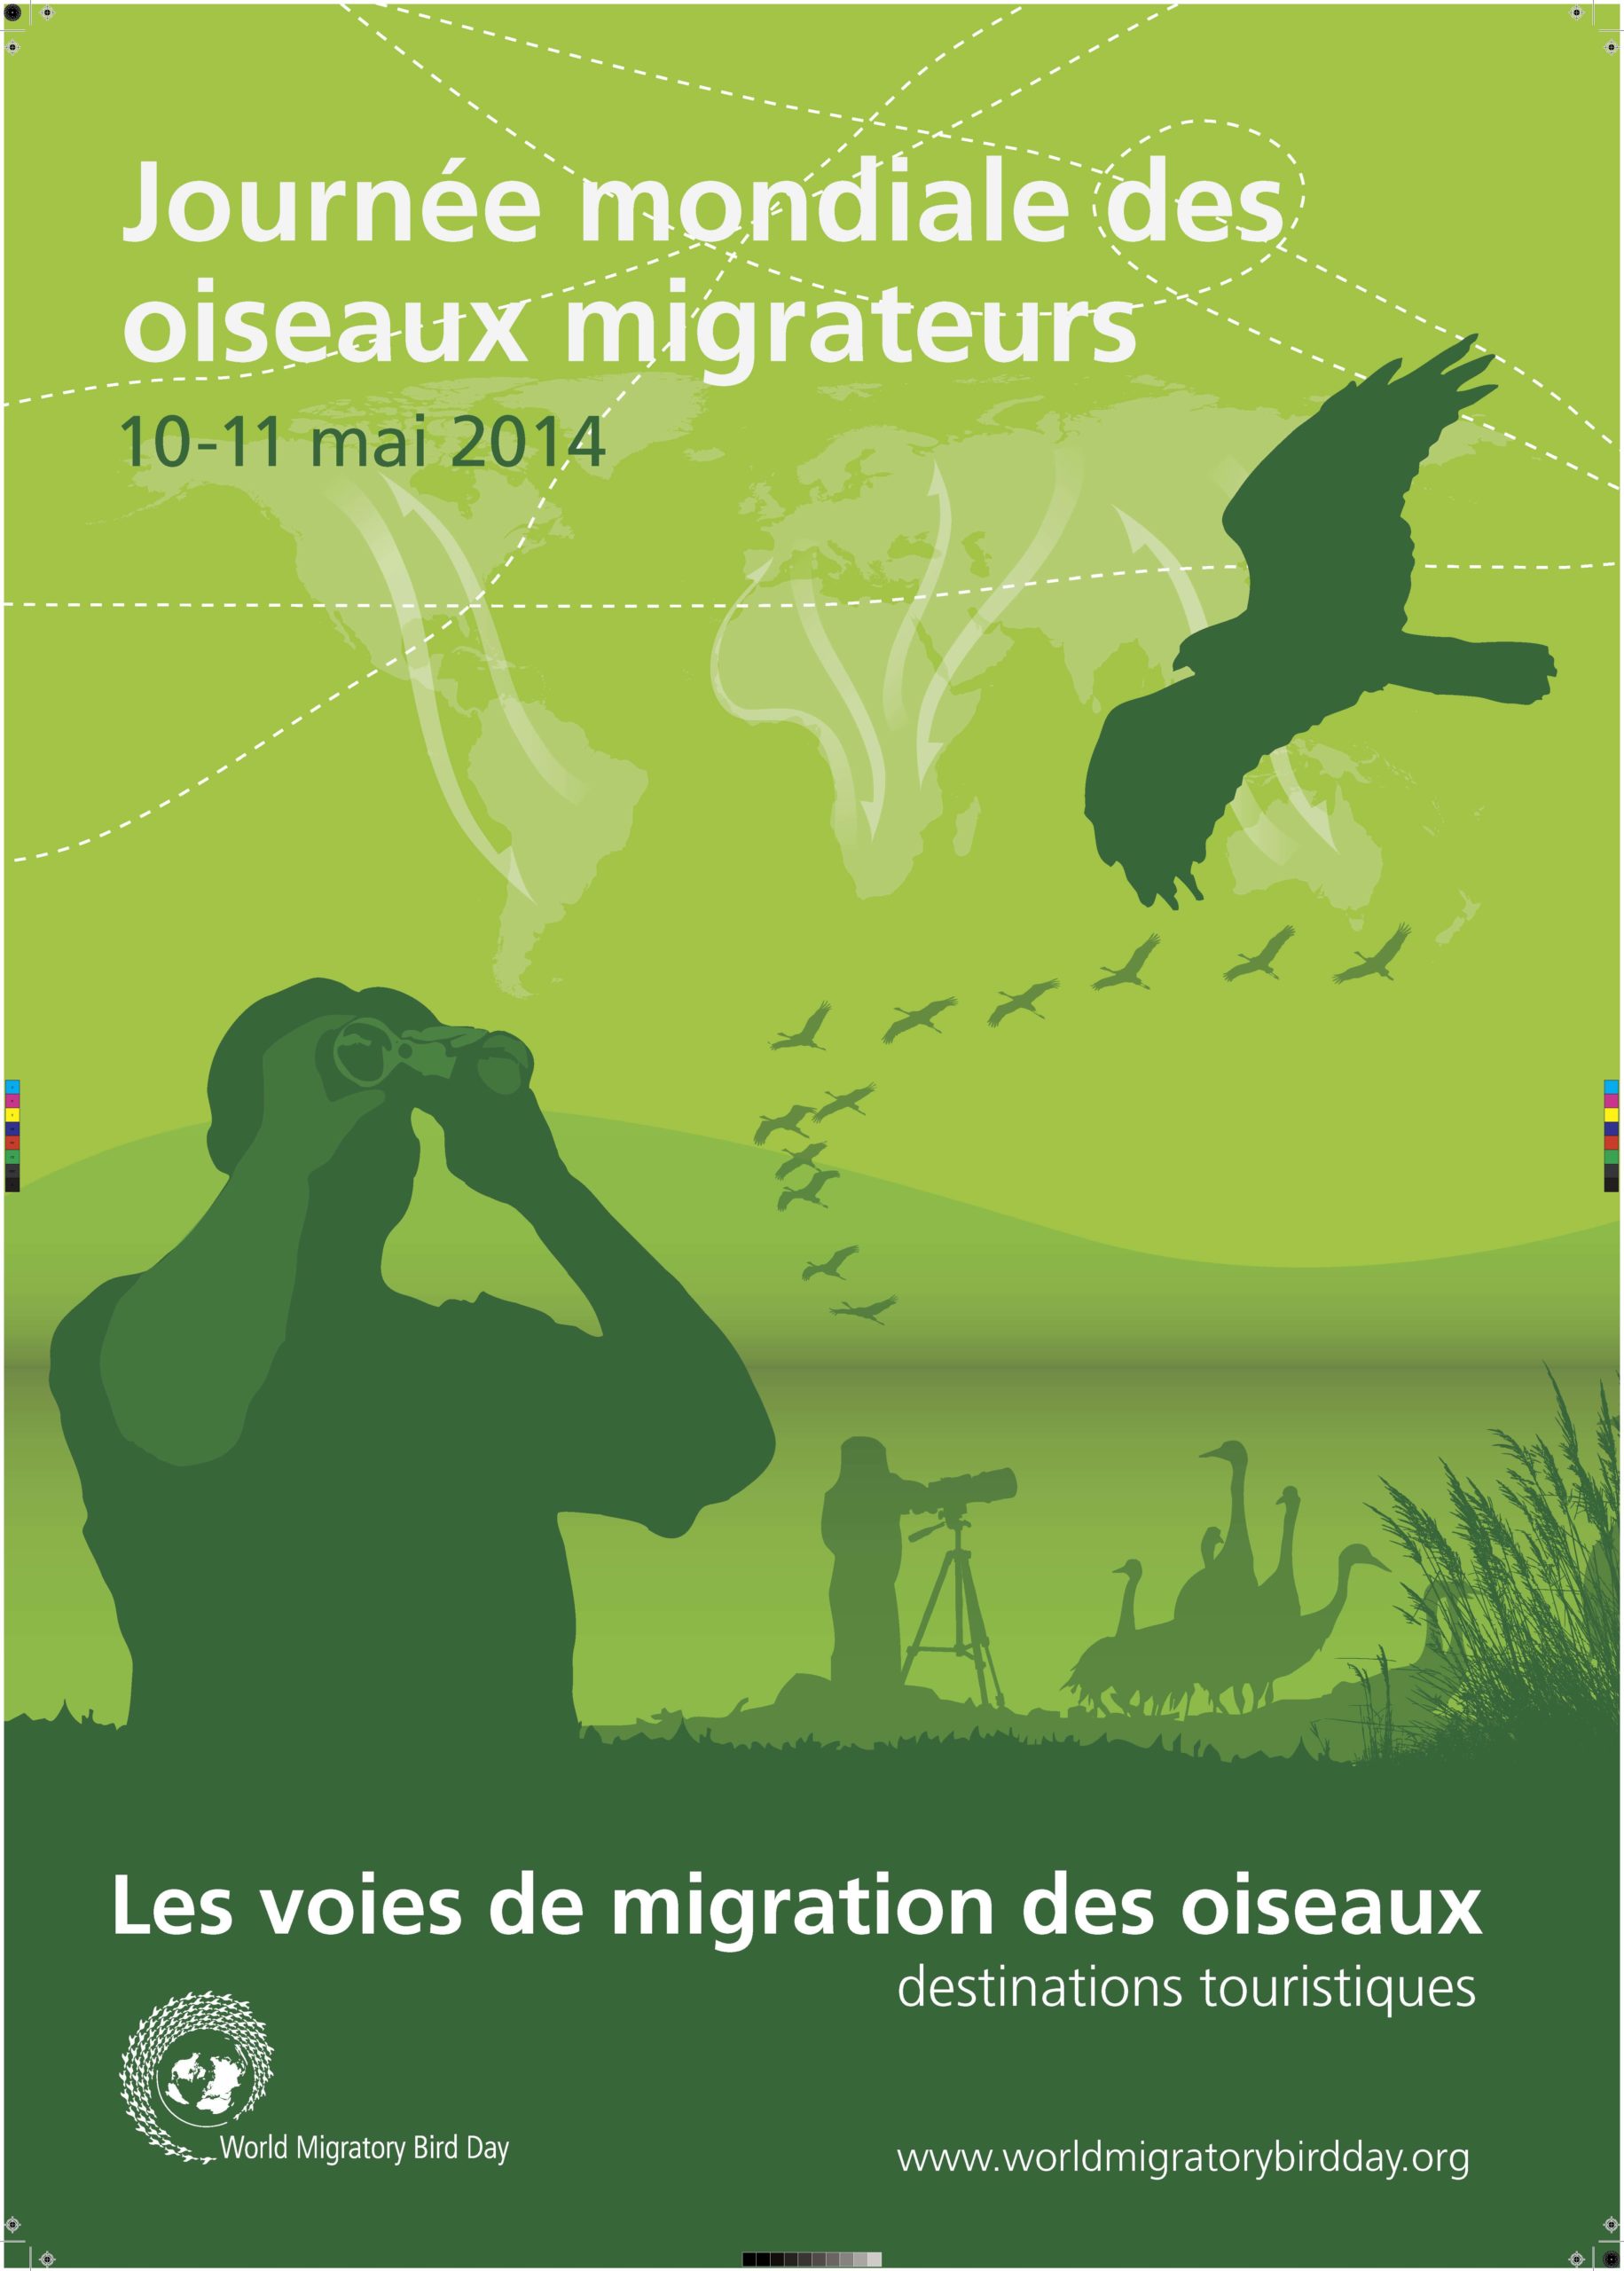 La Journée mondiale des oiseaux migrateurs 2014 met en vedette une initiative pionnière de tourisme durable